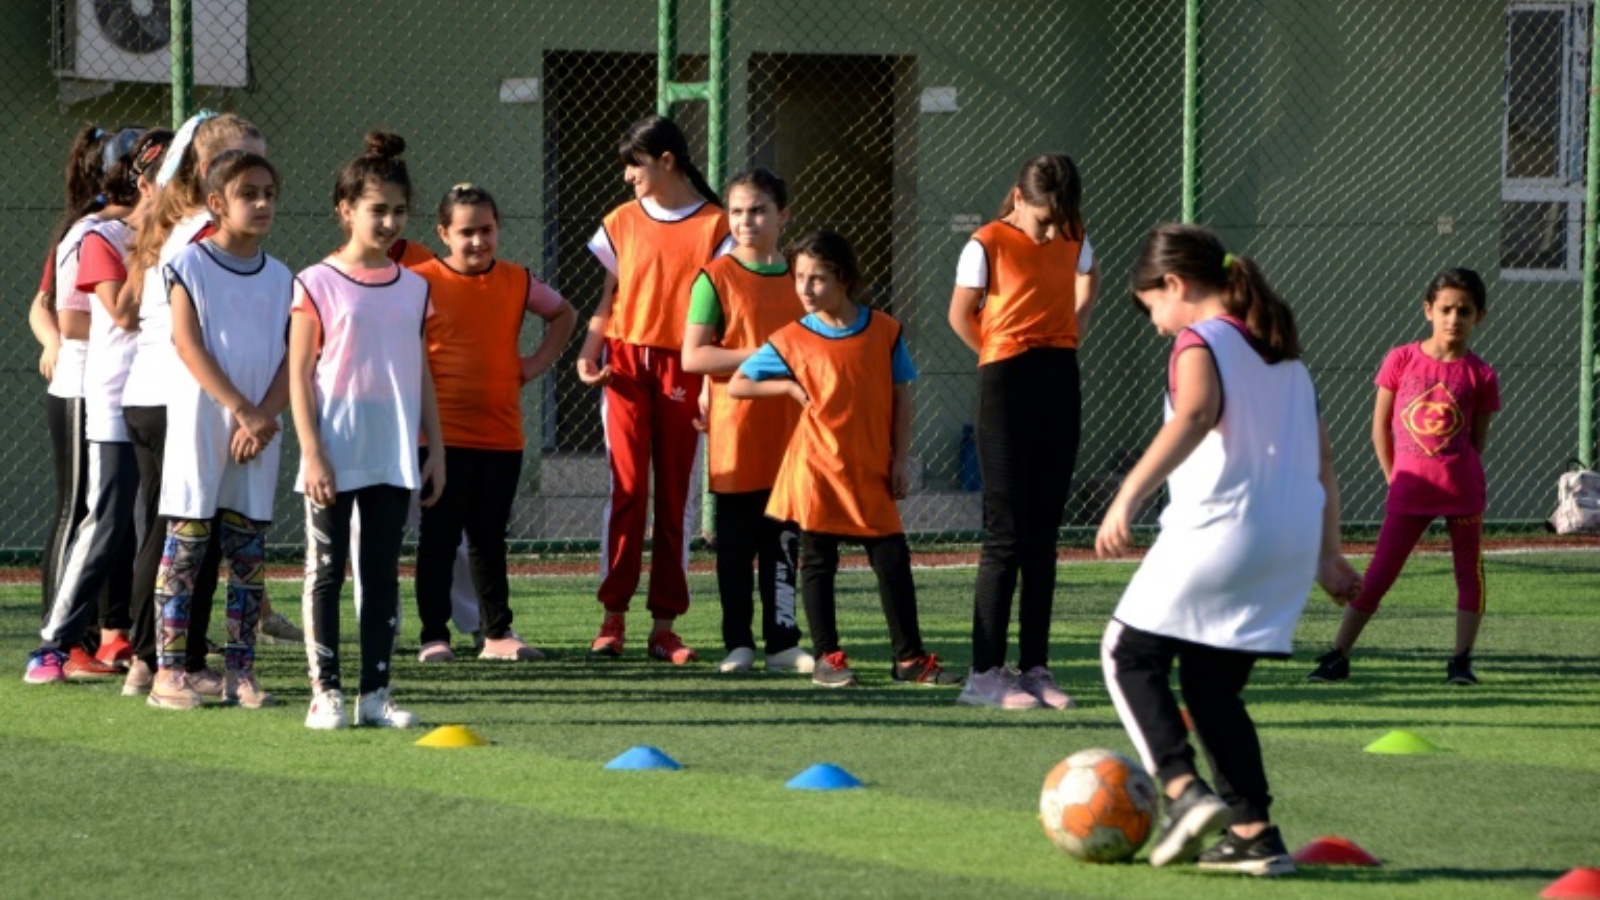 مراهقات عراقيات يشاركن ضمن حصة تدريبية في أكاديمية كرة قدم للفتيات في مدينة برطلة ذات الغالبية المسيحية بشمال العراق في 21 تشرين الأوّل/أكتوبر 2021.